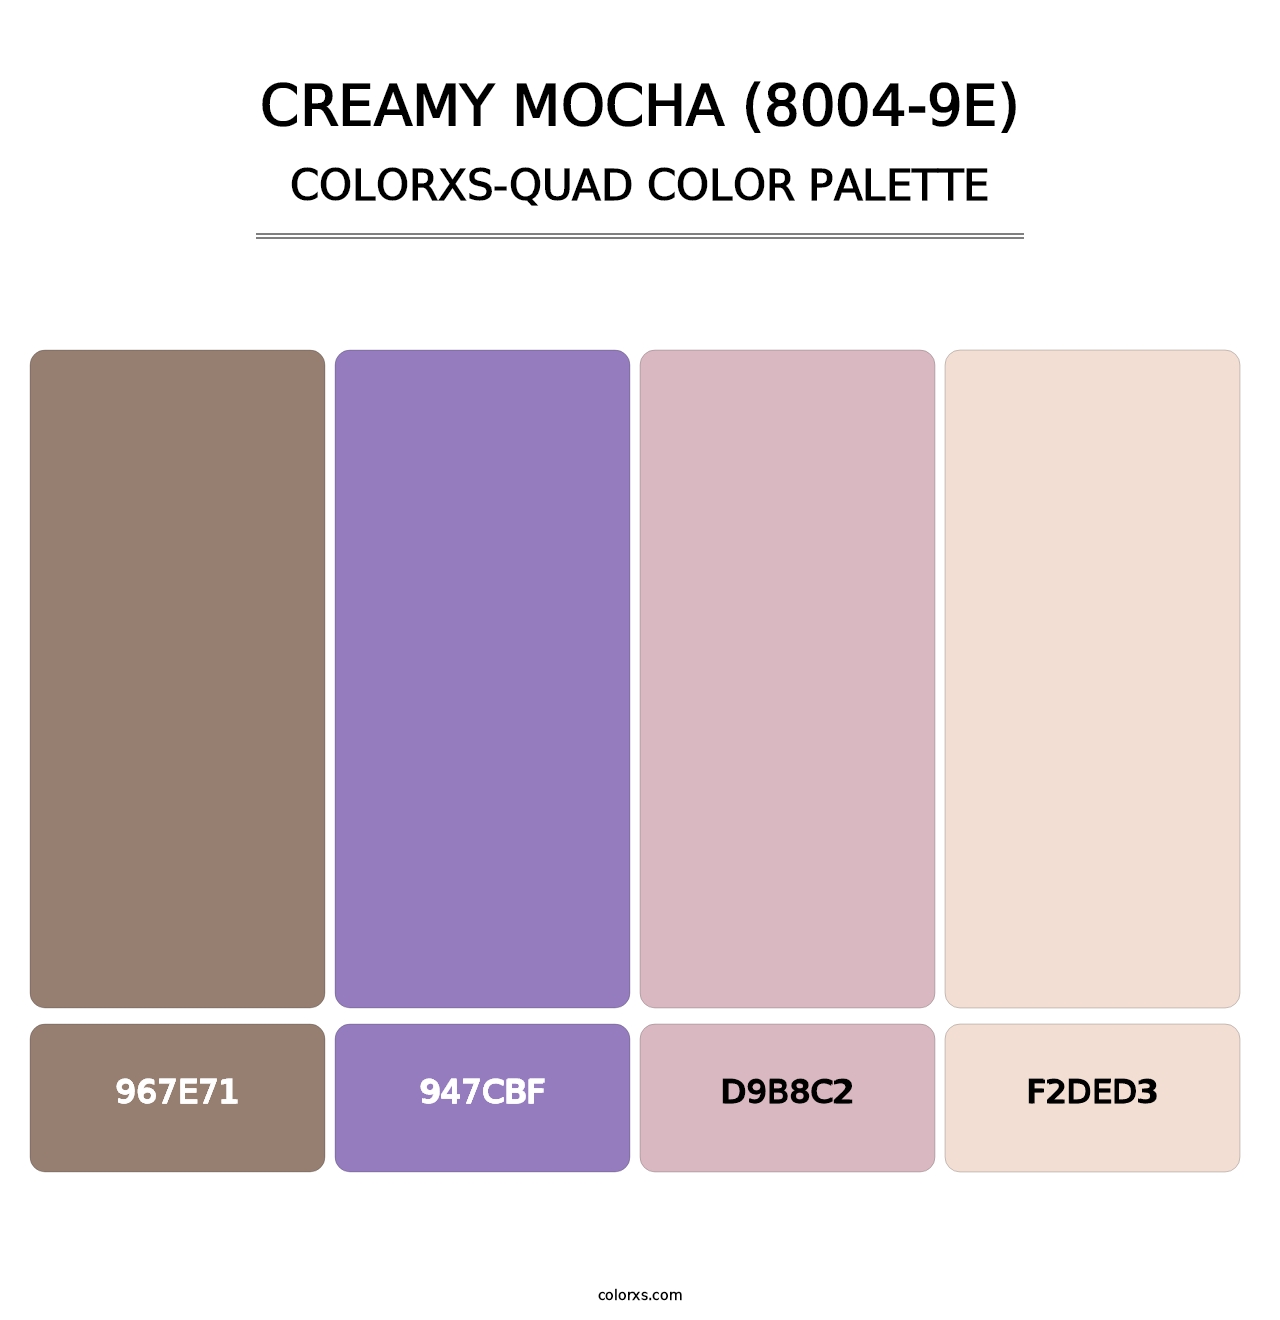 Creamy Mocha (8004-9E) - Colorxs Quad Palette